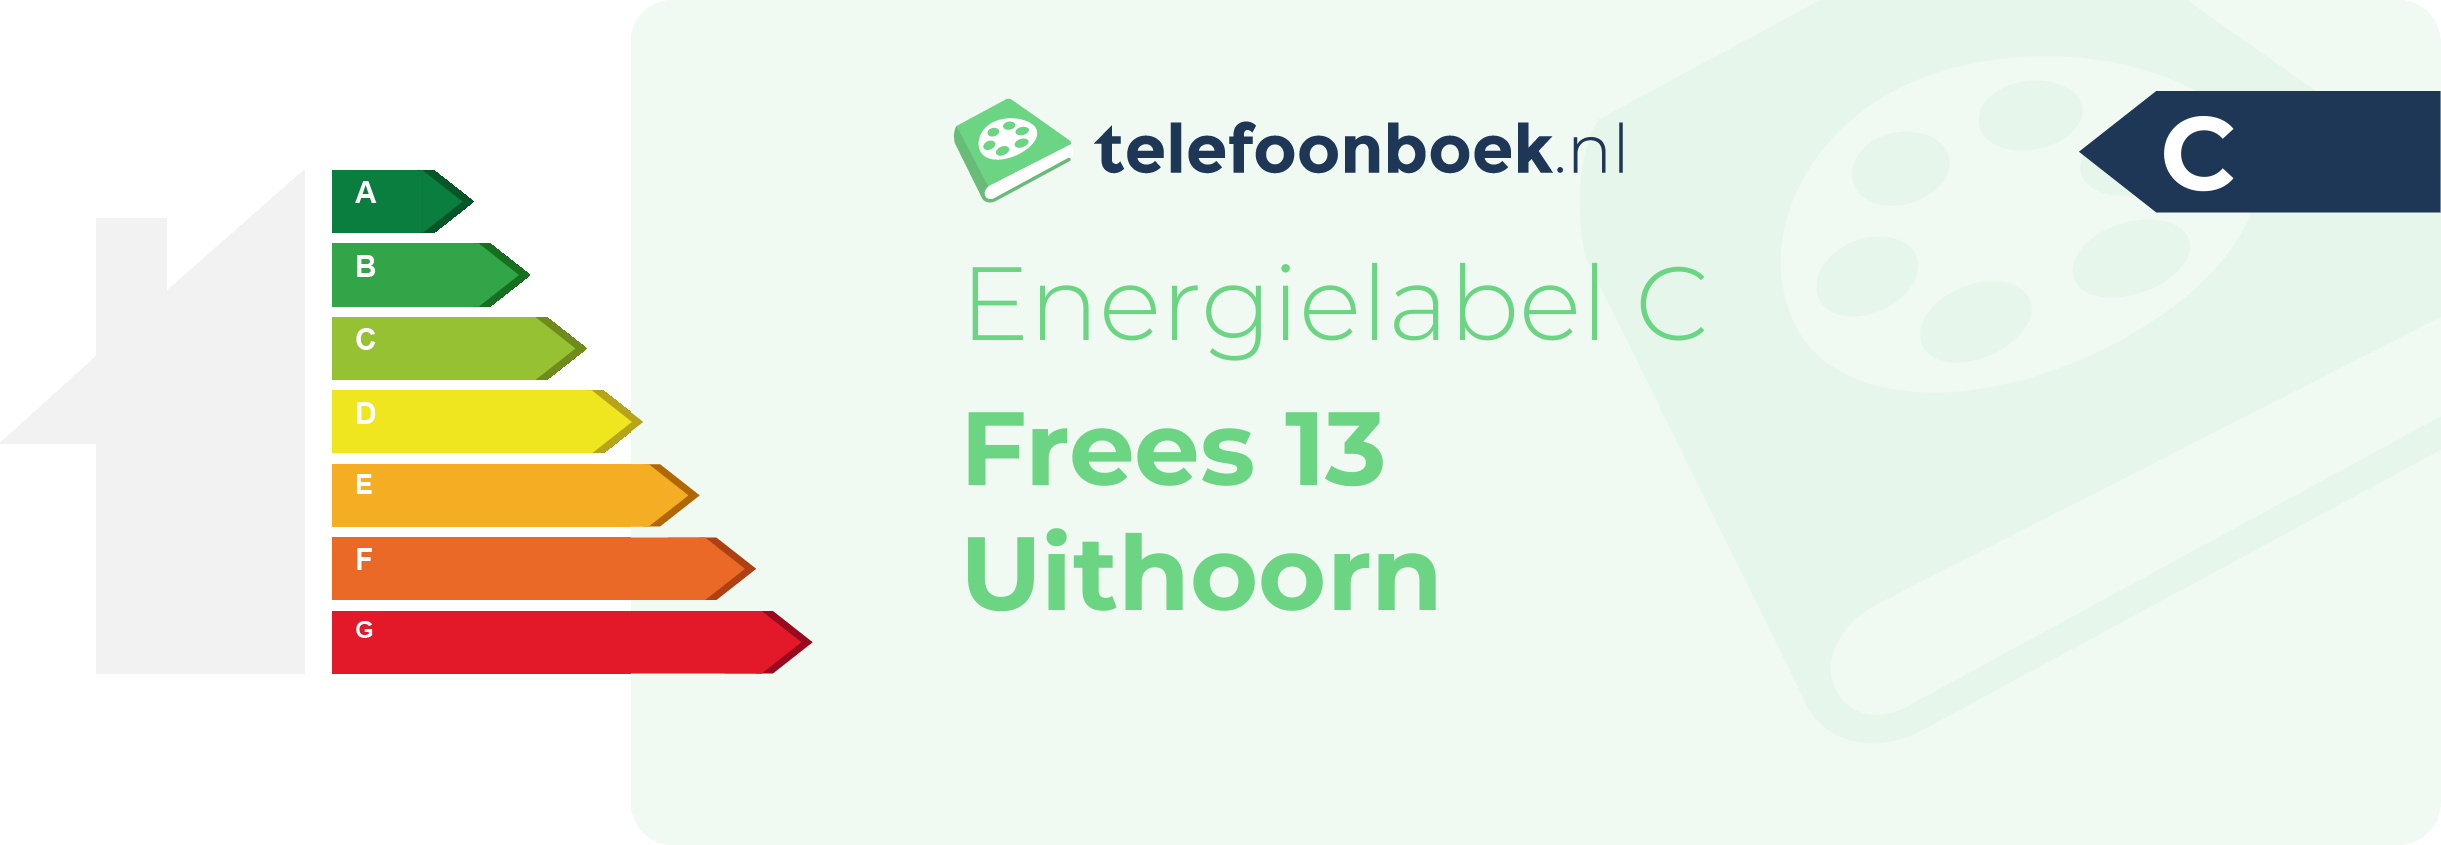 Energielabel Frees 13 Uithoorn